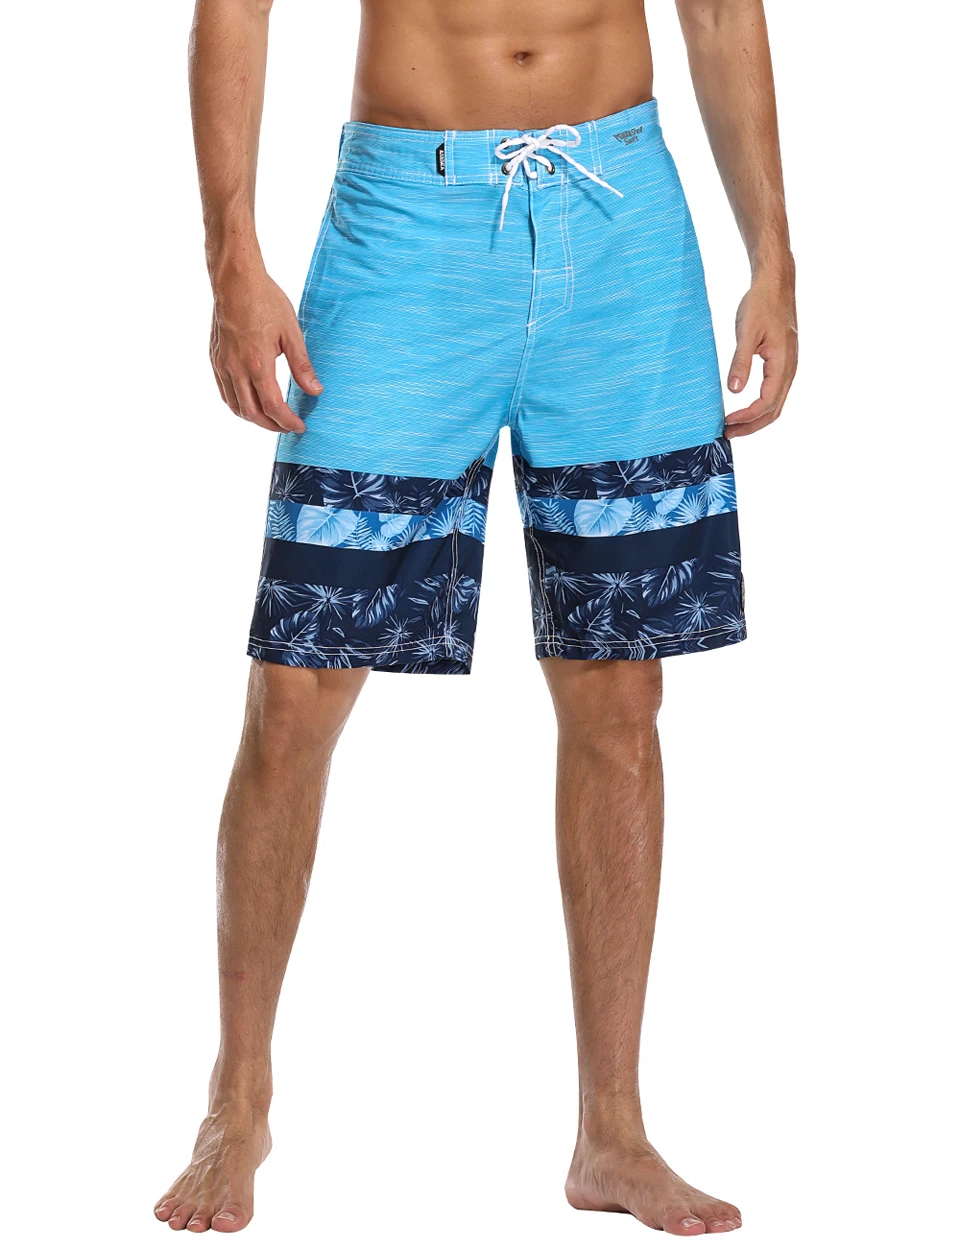 AXESEA, мужские пляжные шорты, одежда для плавания, дышащие плавки, Быстросохнущий купальный костюм, шорты для серфинга, спортивные пляжные штаны с карманами, 21 дюйм